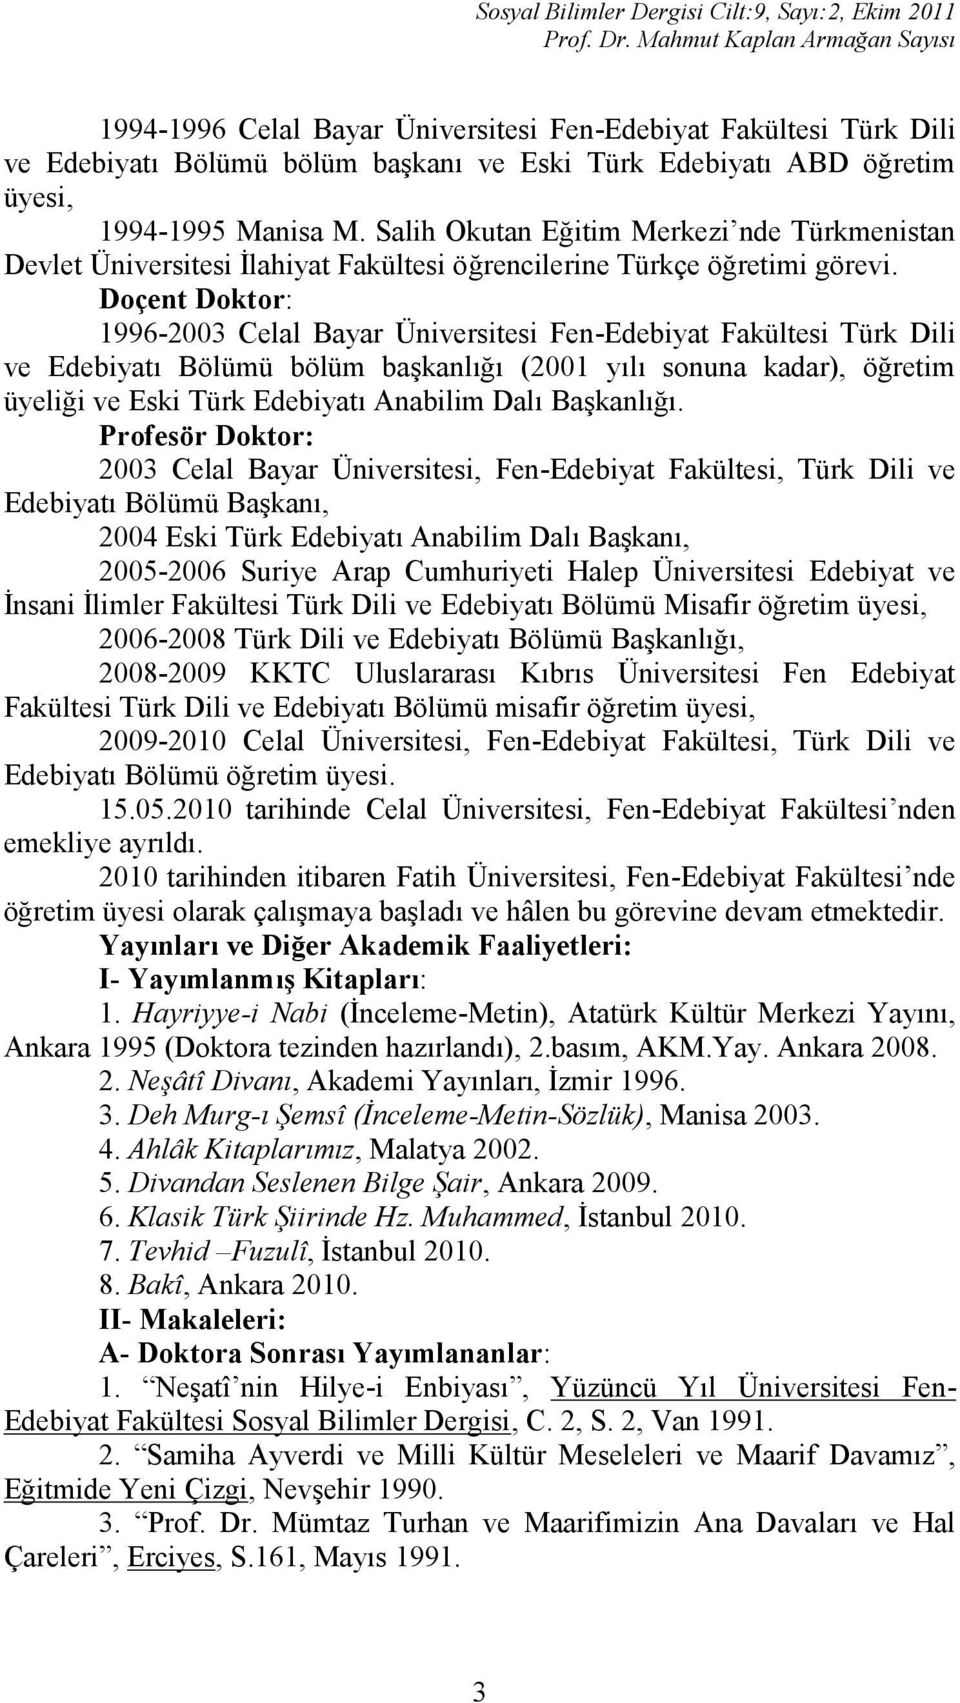 Salih Okutan Eğitim Merkezi nde Türkmenistan Devlet Üniversitesi İlahiyat Fakültesi öğrencilerine Türkçe öğretimi görevi.